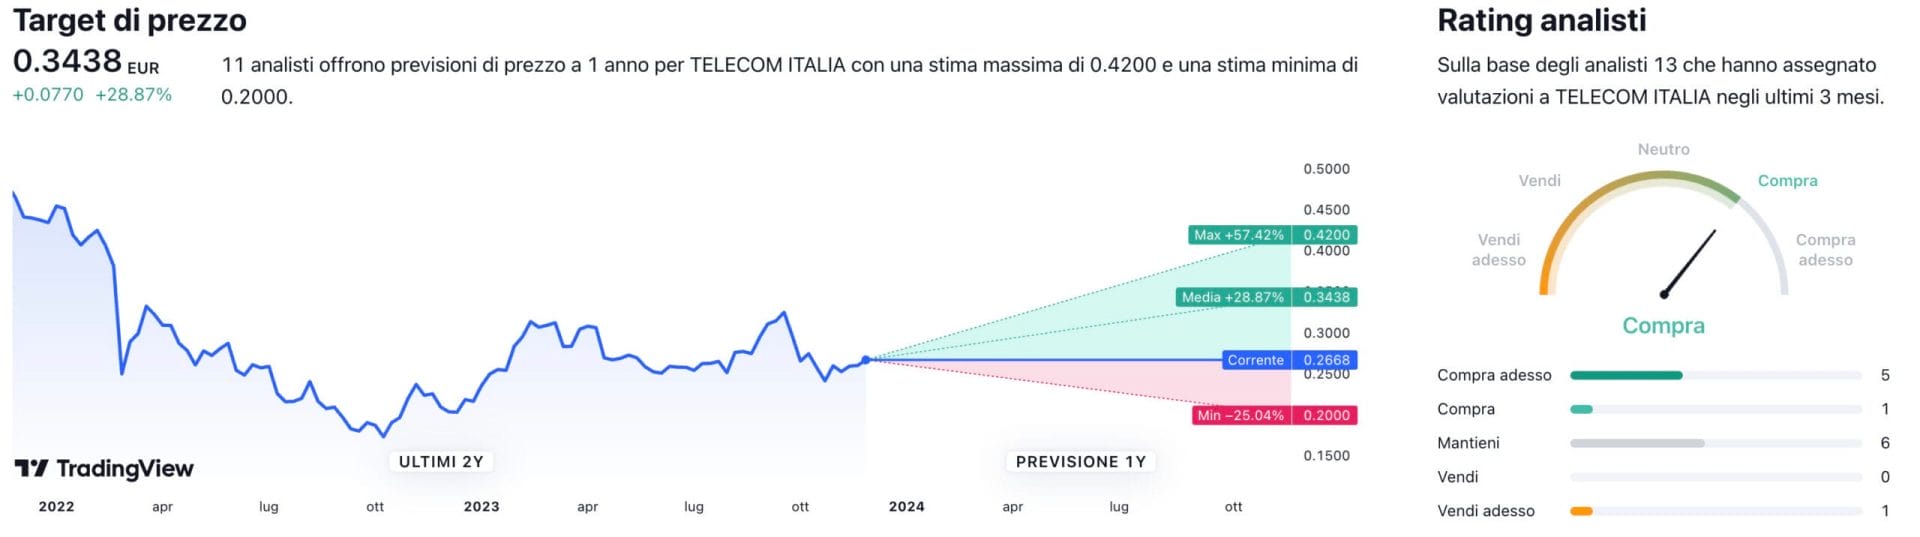 Target di prezzo a un anno e raccomandazioni degli analisti per il titolo Telecom Italia